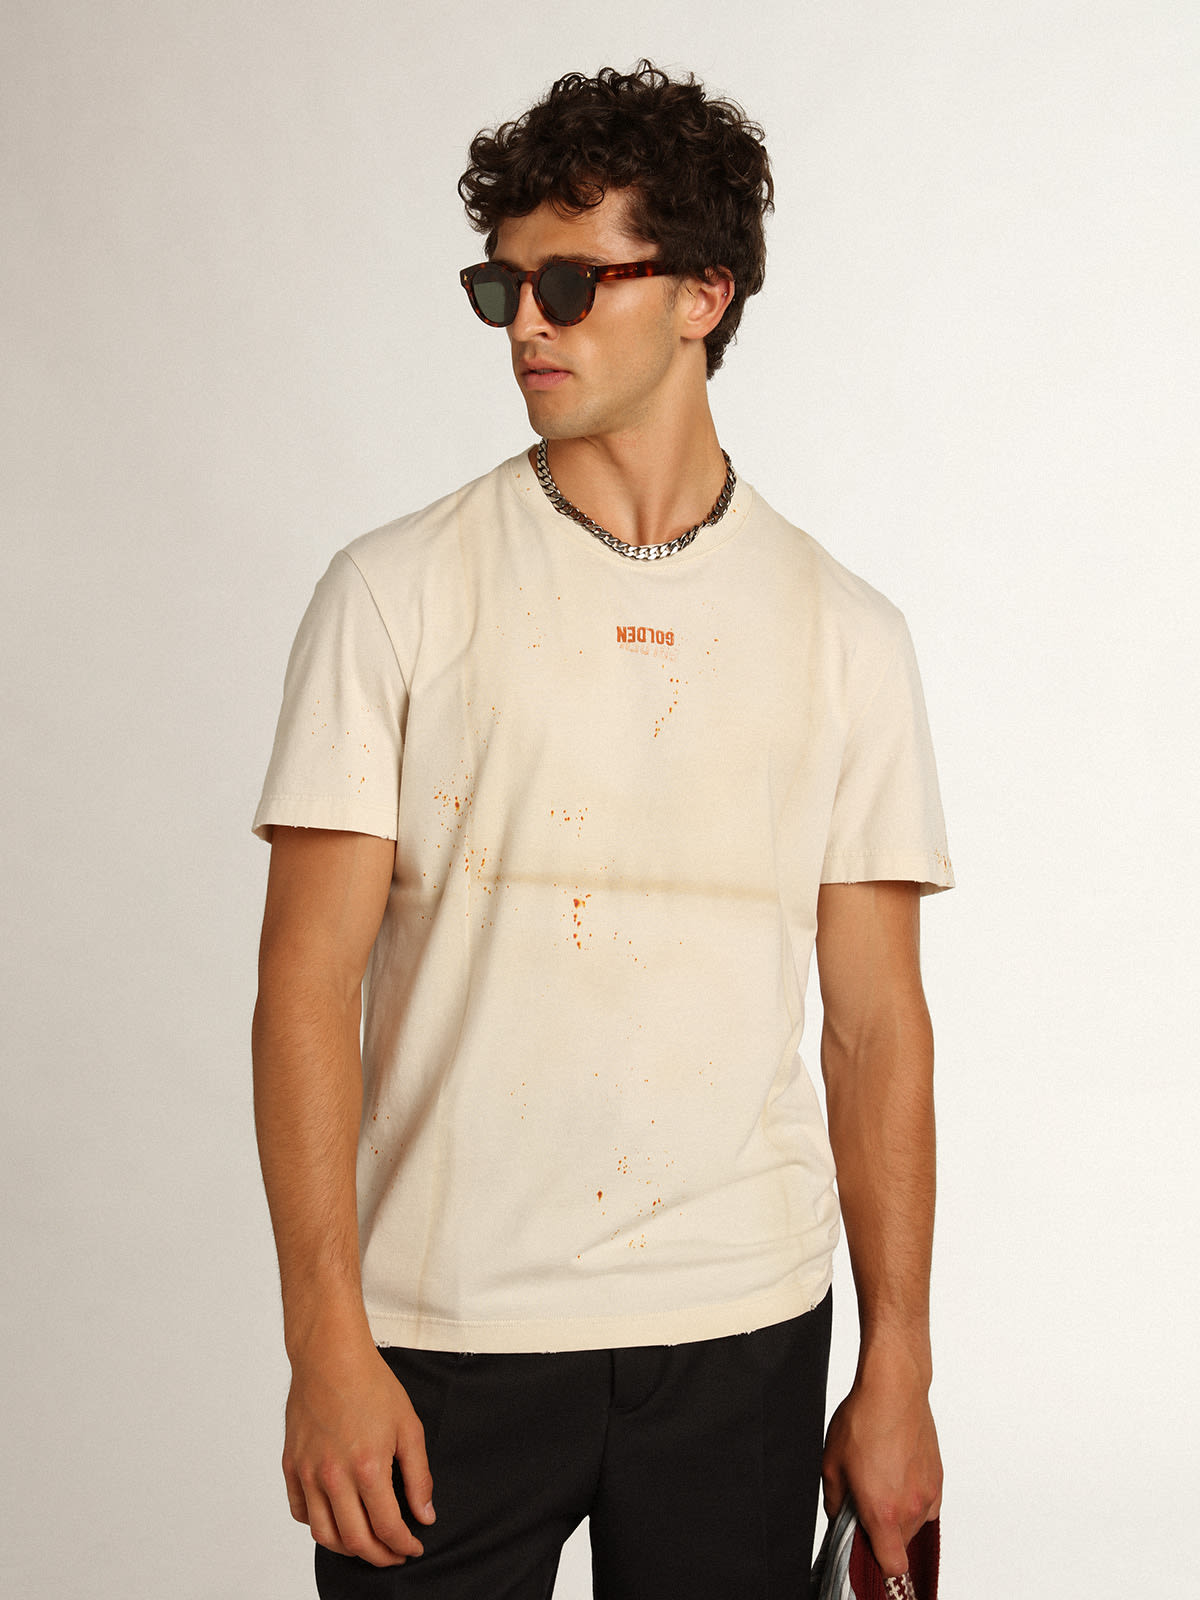 Golden Goose - T-shirt homme blanc cassé avec inscription et détails usés in 